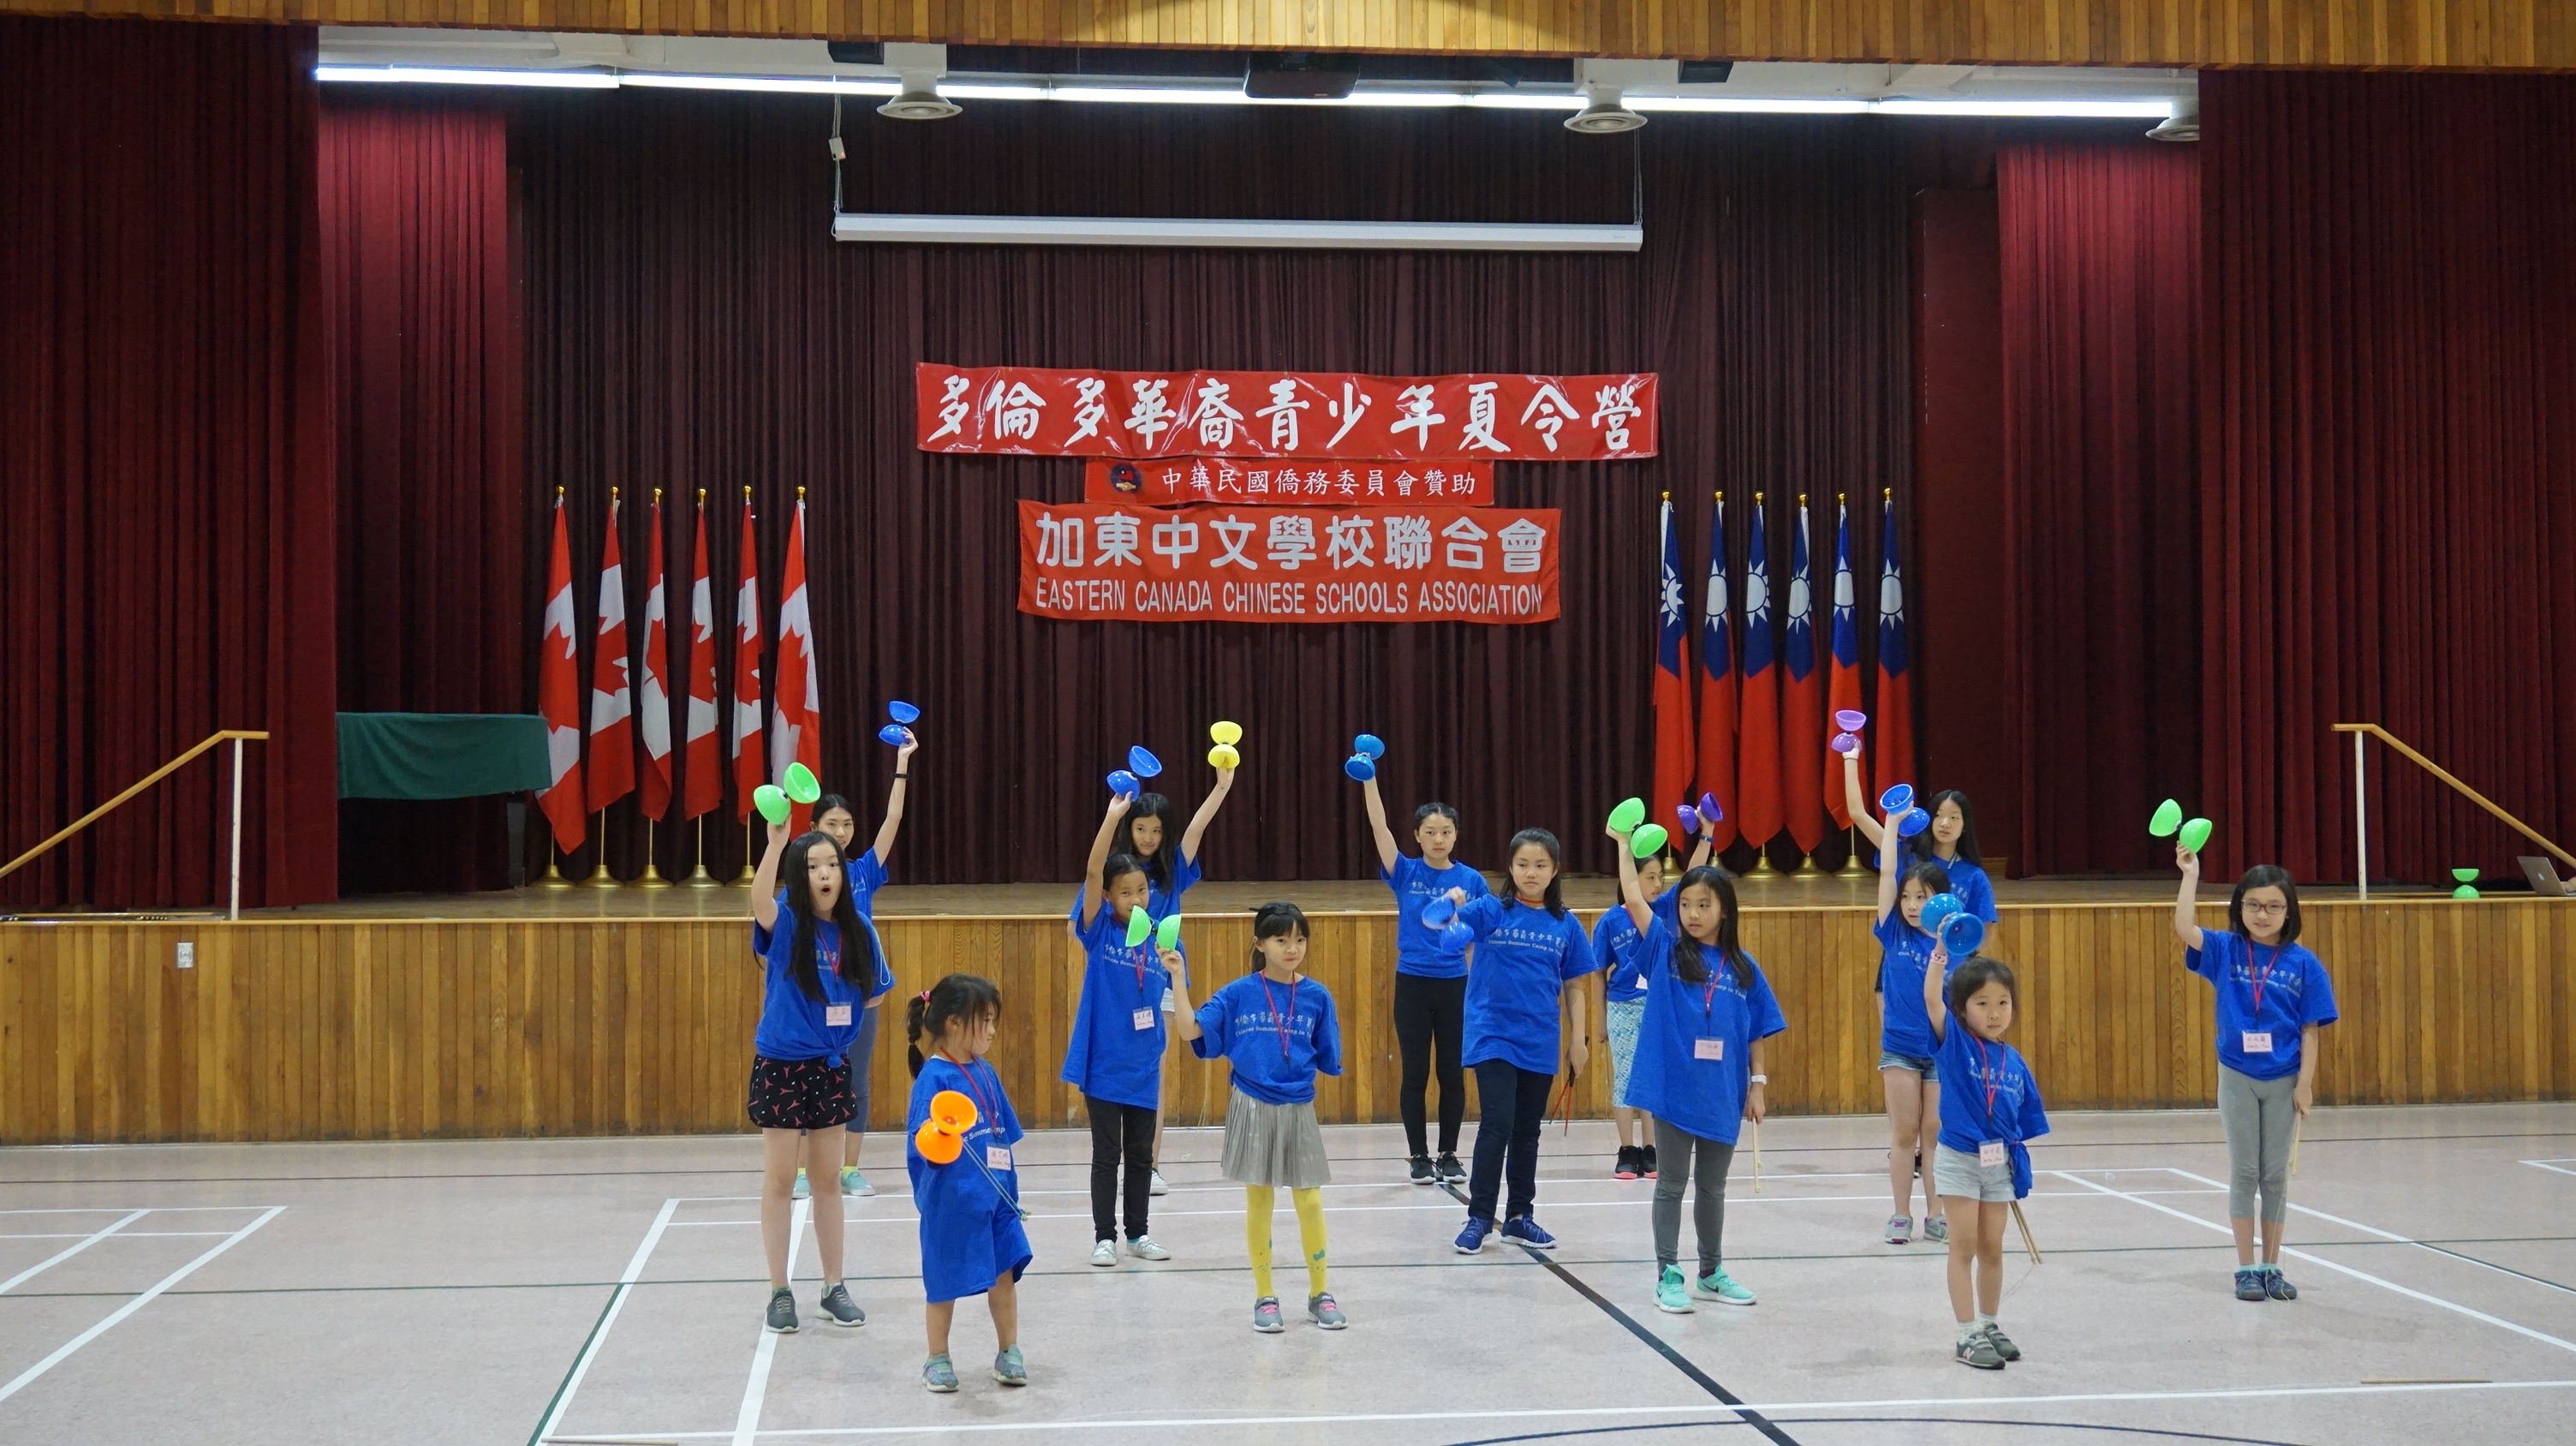 2019年多倫多僑民青少年夏令營女學員扯鈴表演。